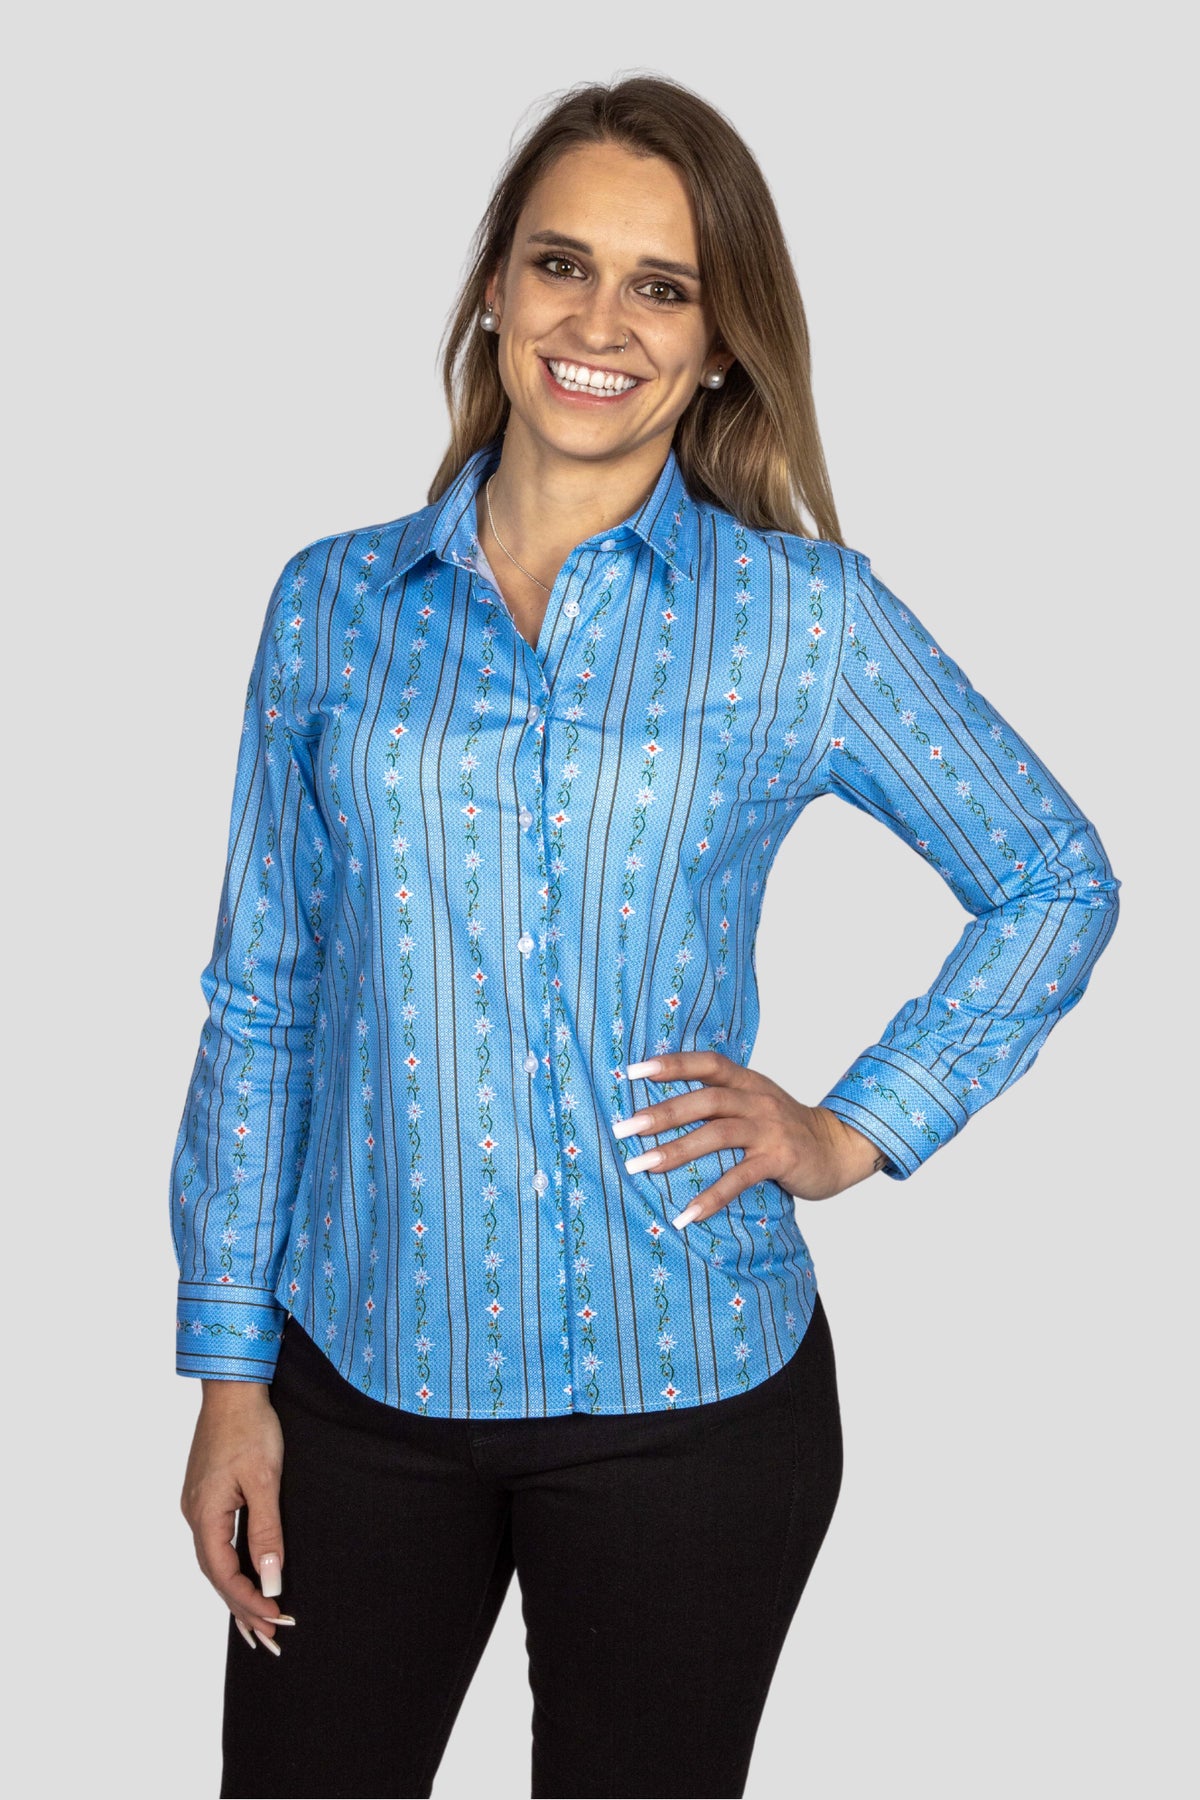 Damen Edelweiss Bluse von Edelvetica, gekennzeichnet durch ein traditionelles und zugleich modernes Design. Diese Bluse ist mit einem charakteristischen Edelweiss-Muster verziert und bietet eine perfekte Mischung aus Schweizer Tradition und zeitgemäßer Eleganz. Ideal für formelle und informelle Anlässe, bei denen stilvolle Kleidung gefragt ist.